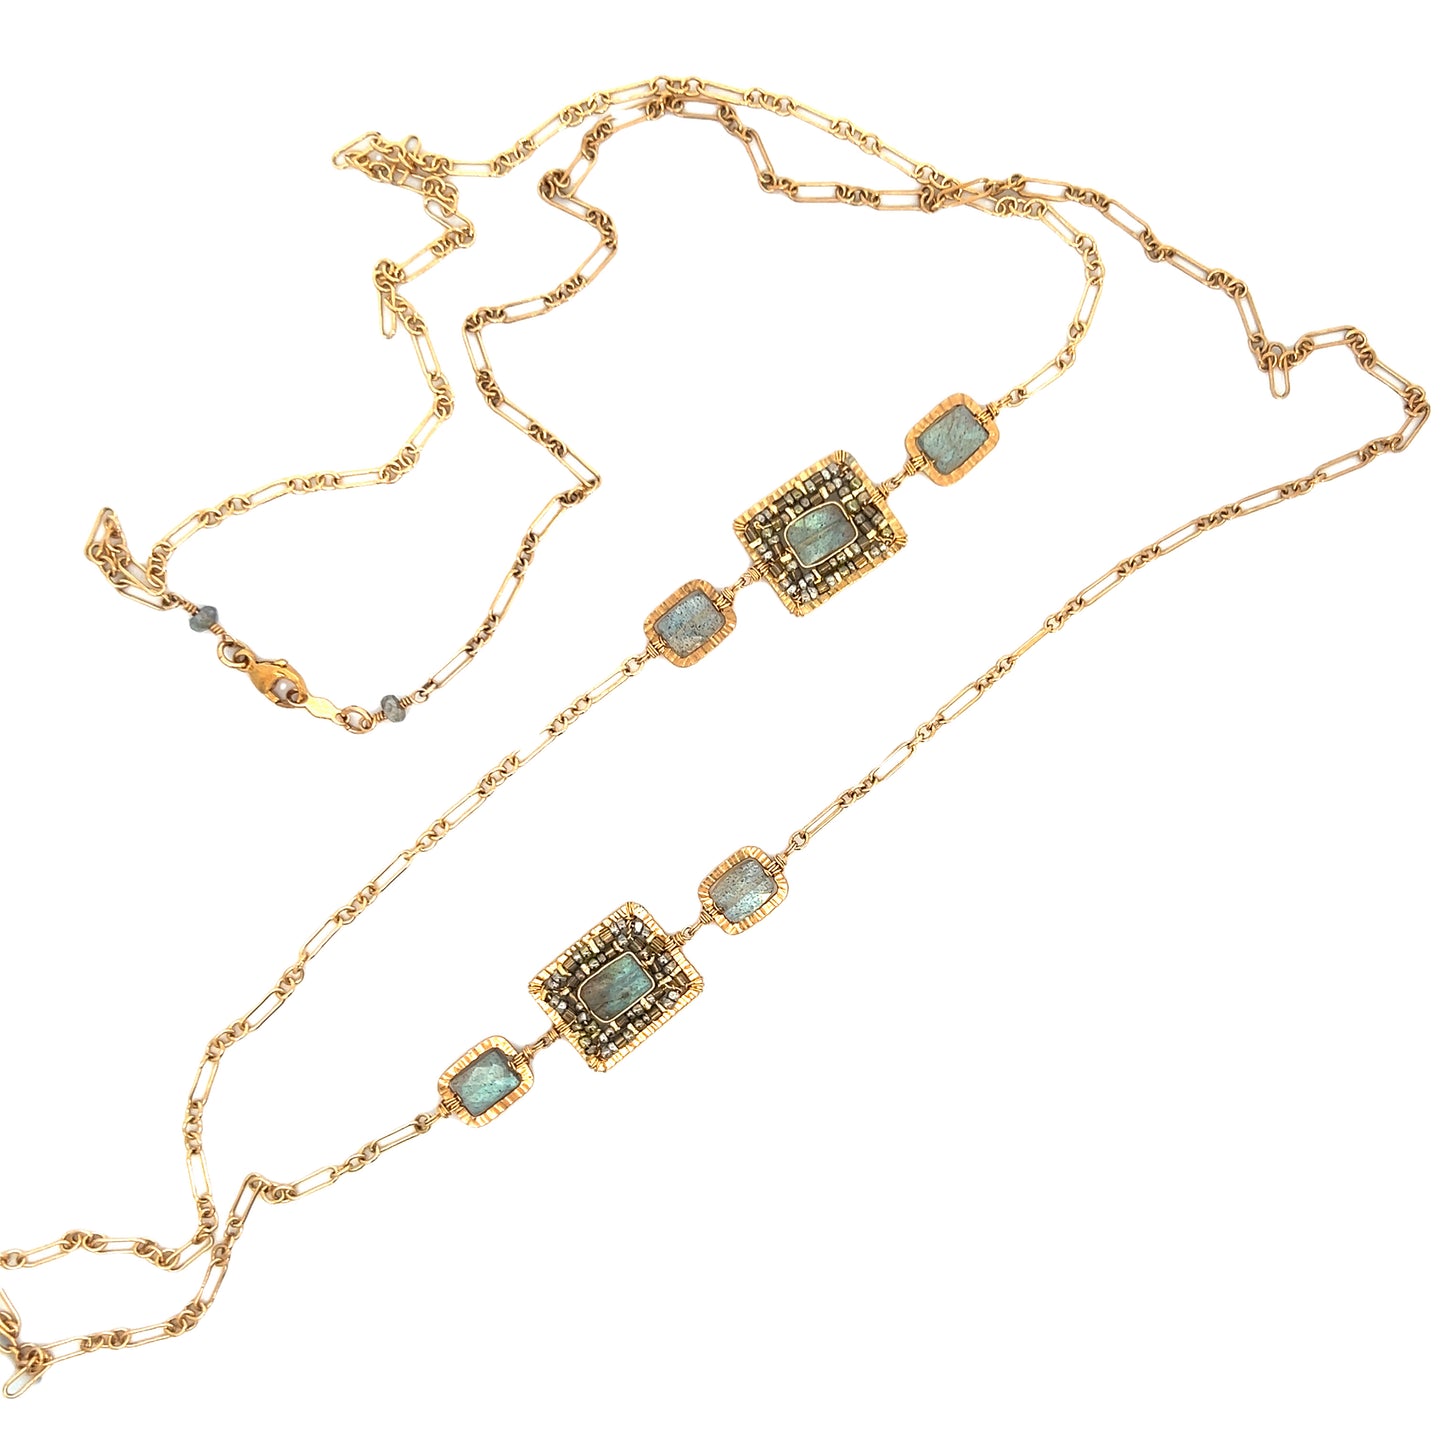 Dana Kellin Collection 38" Labradorite & Crystal Necklace